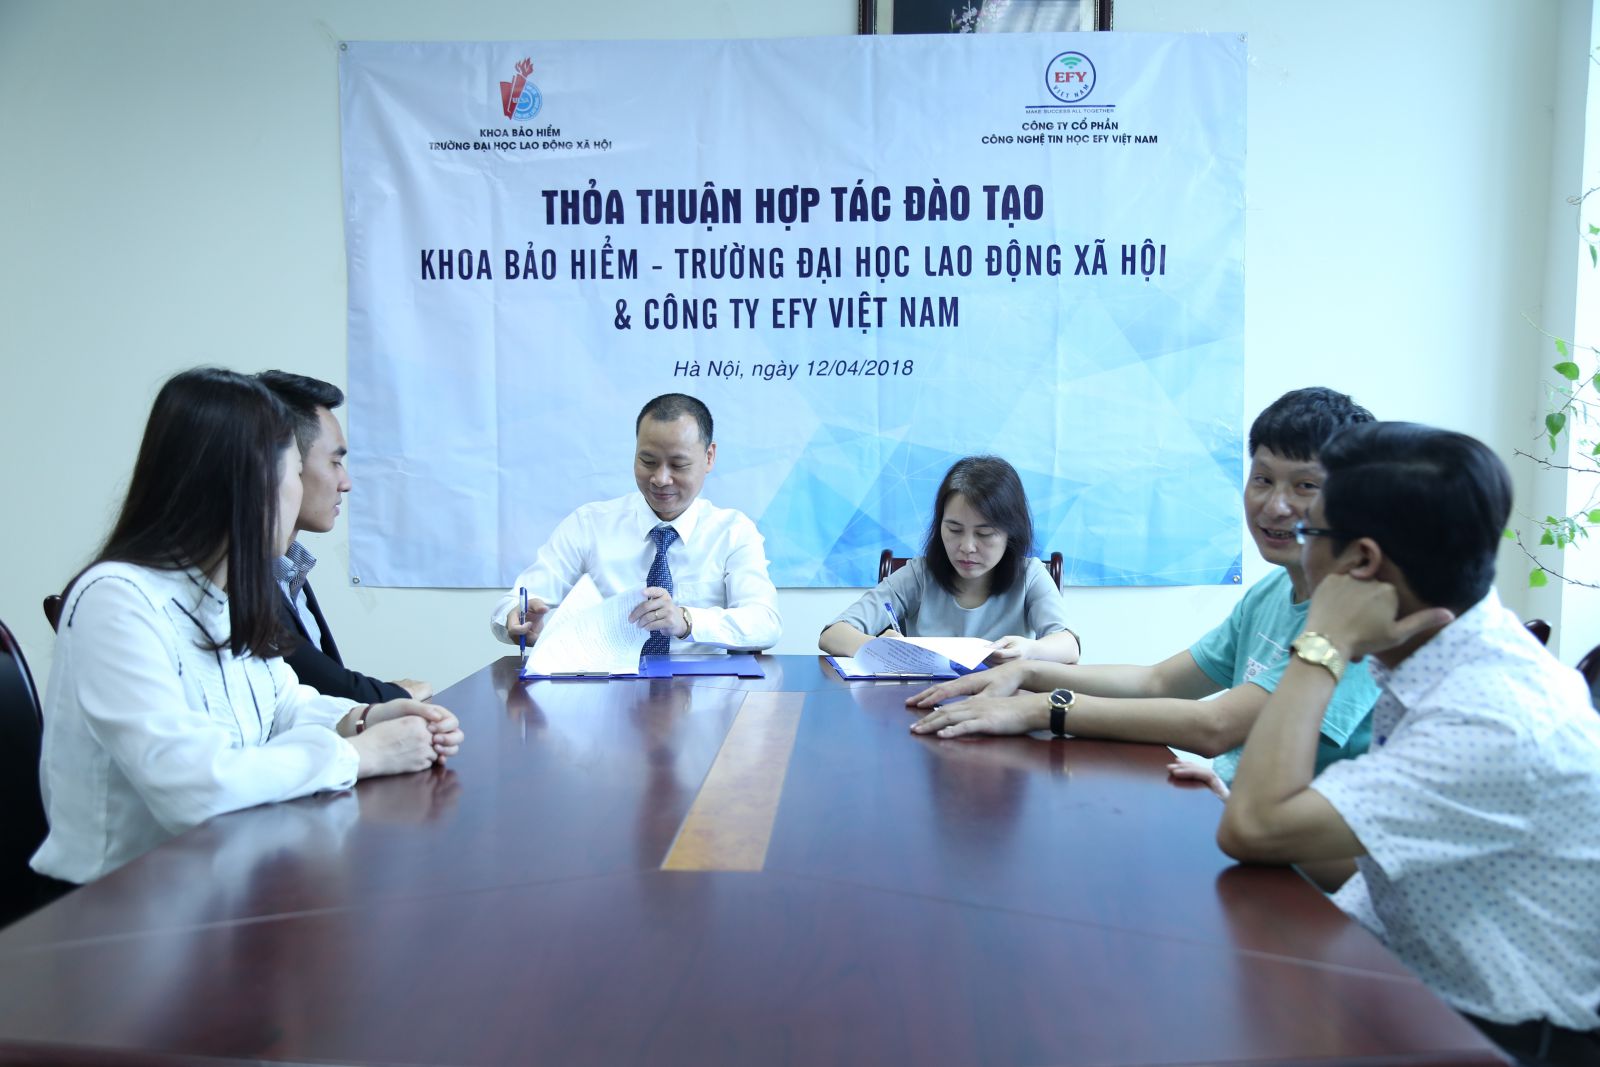 EFY Việt Nam ký kết hợp tác đào tạo với Khoa bảo hiểm – Trường đại học Lao động xã hội